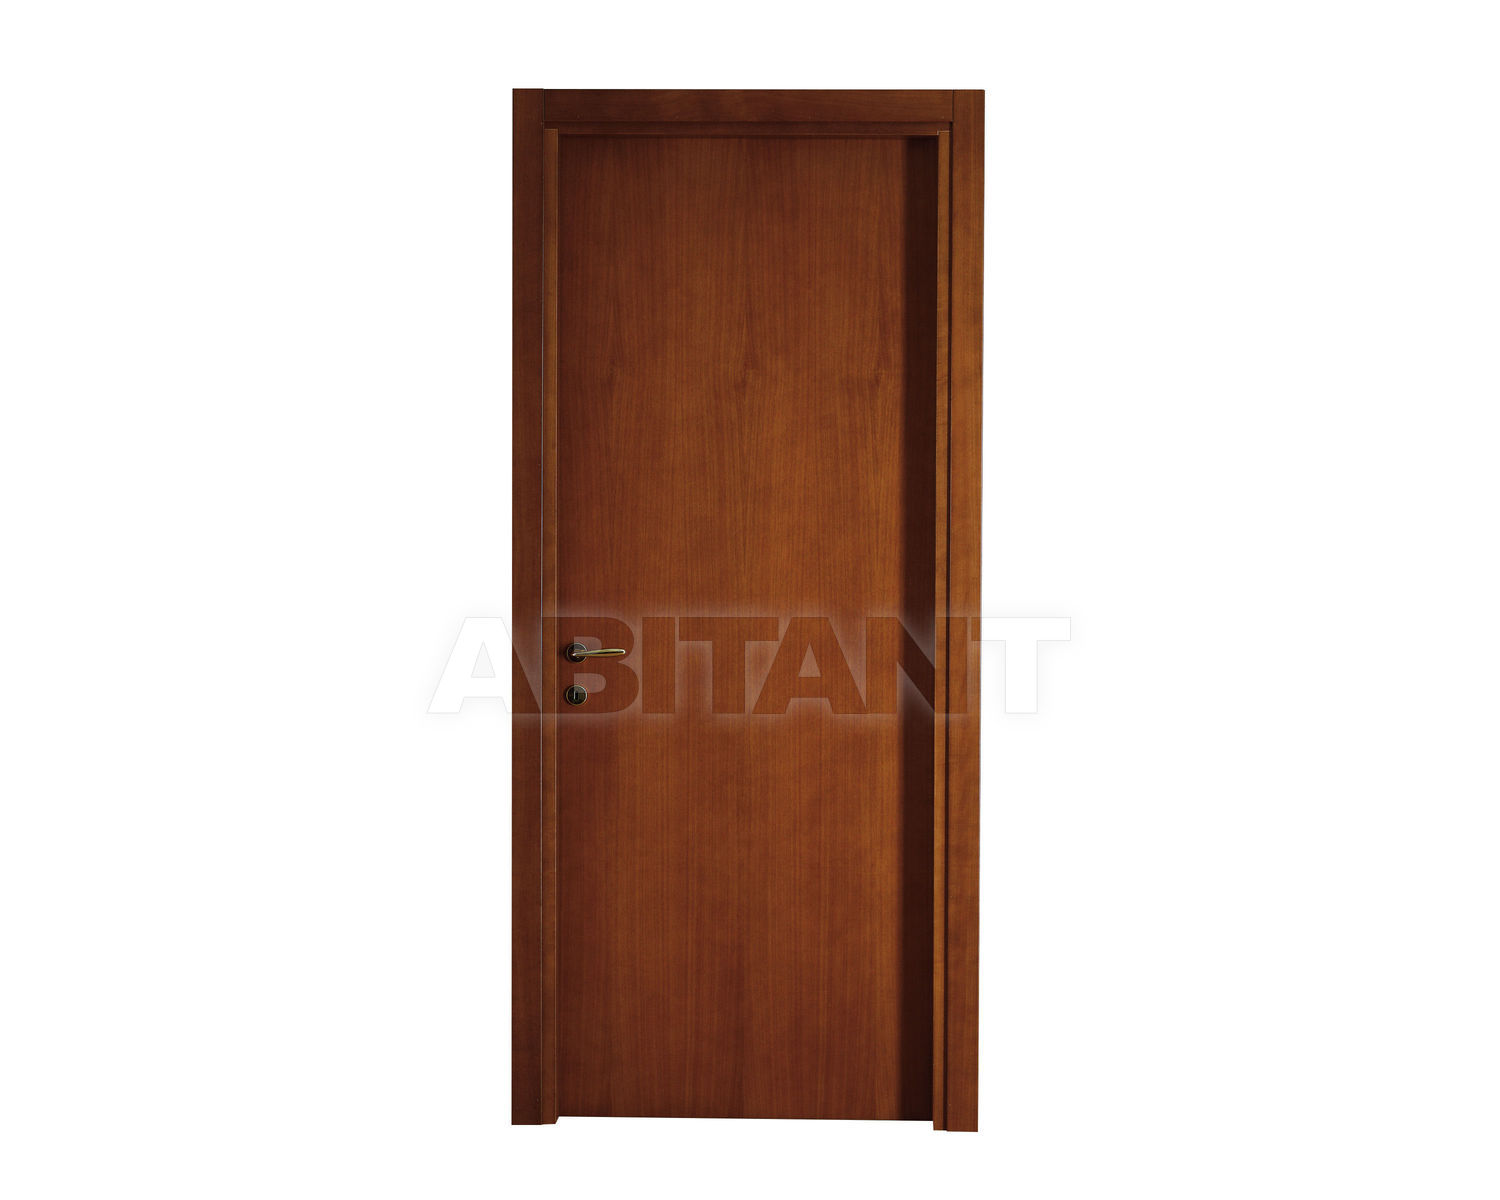 Купить Дверь деревянная Geronazzo F.lli snc Porte 10